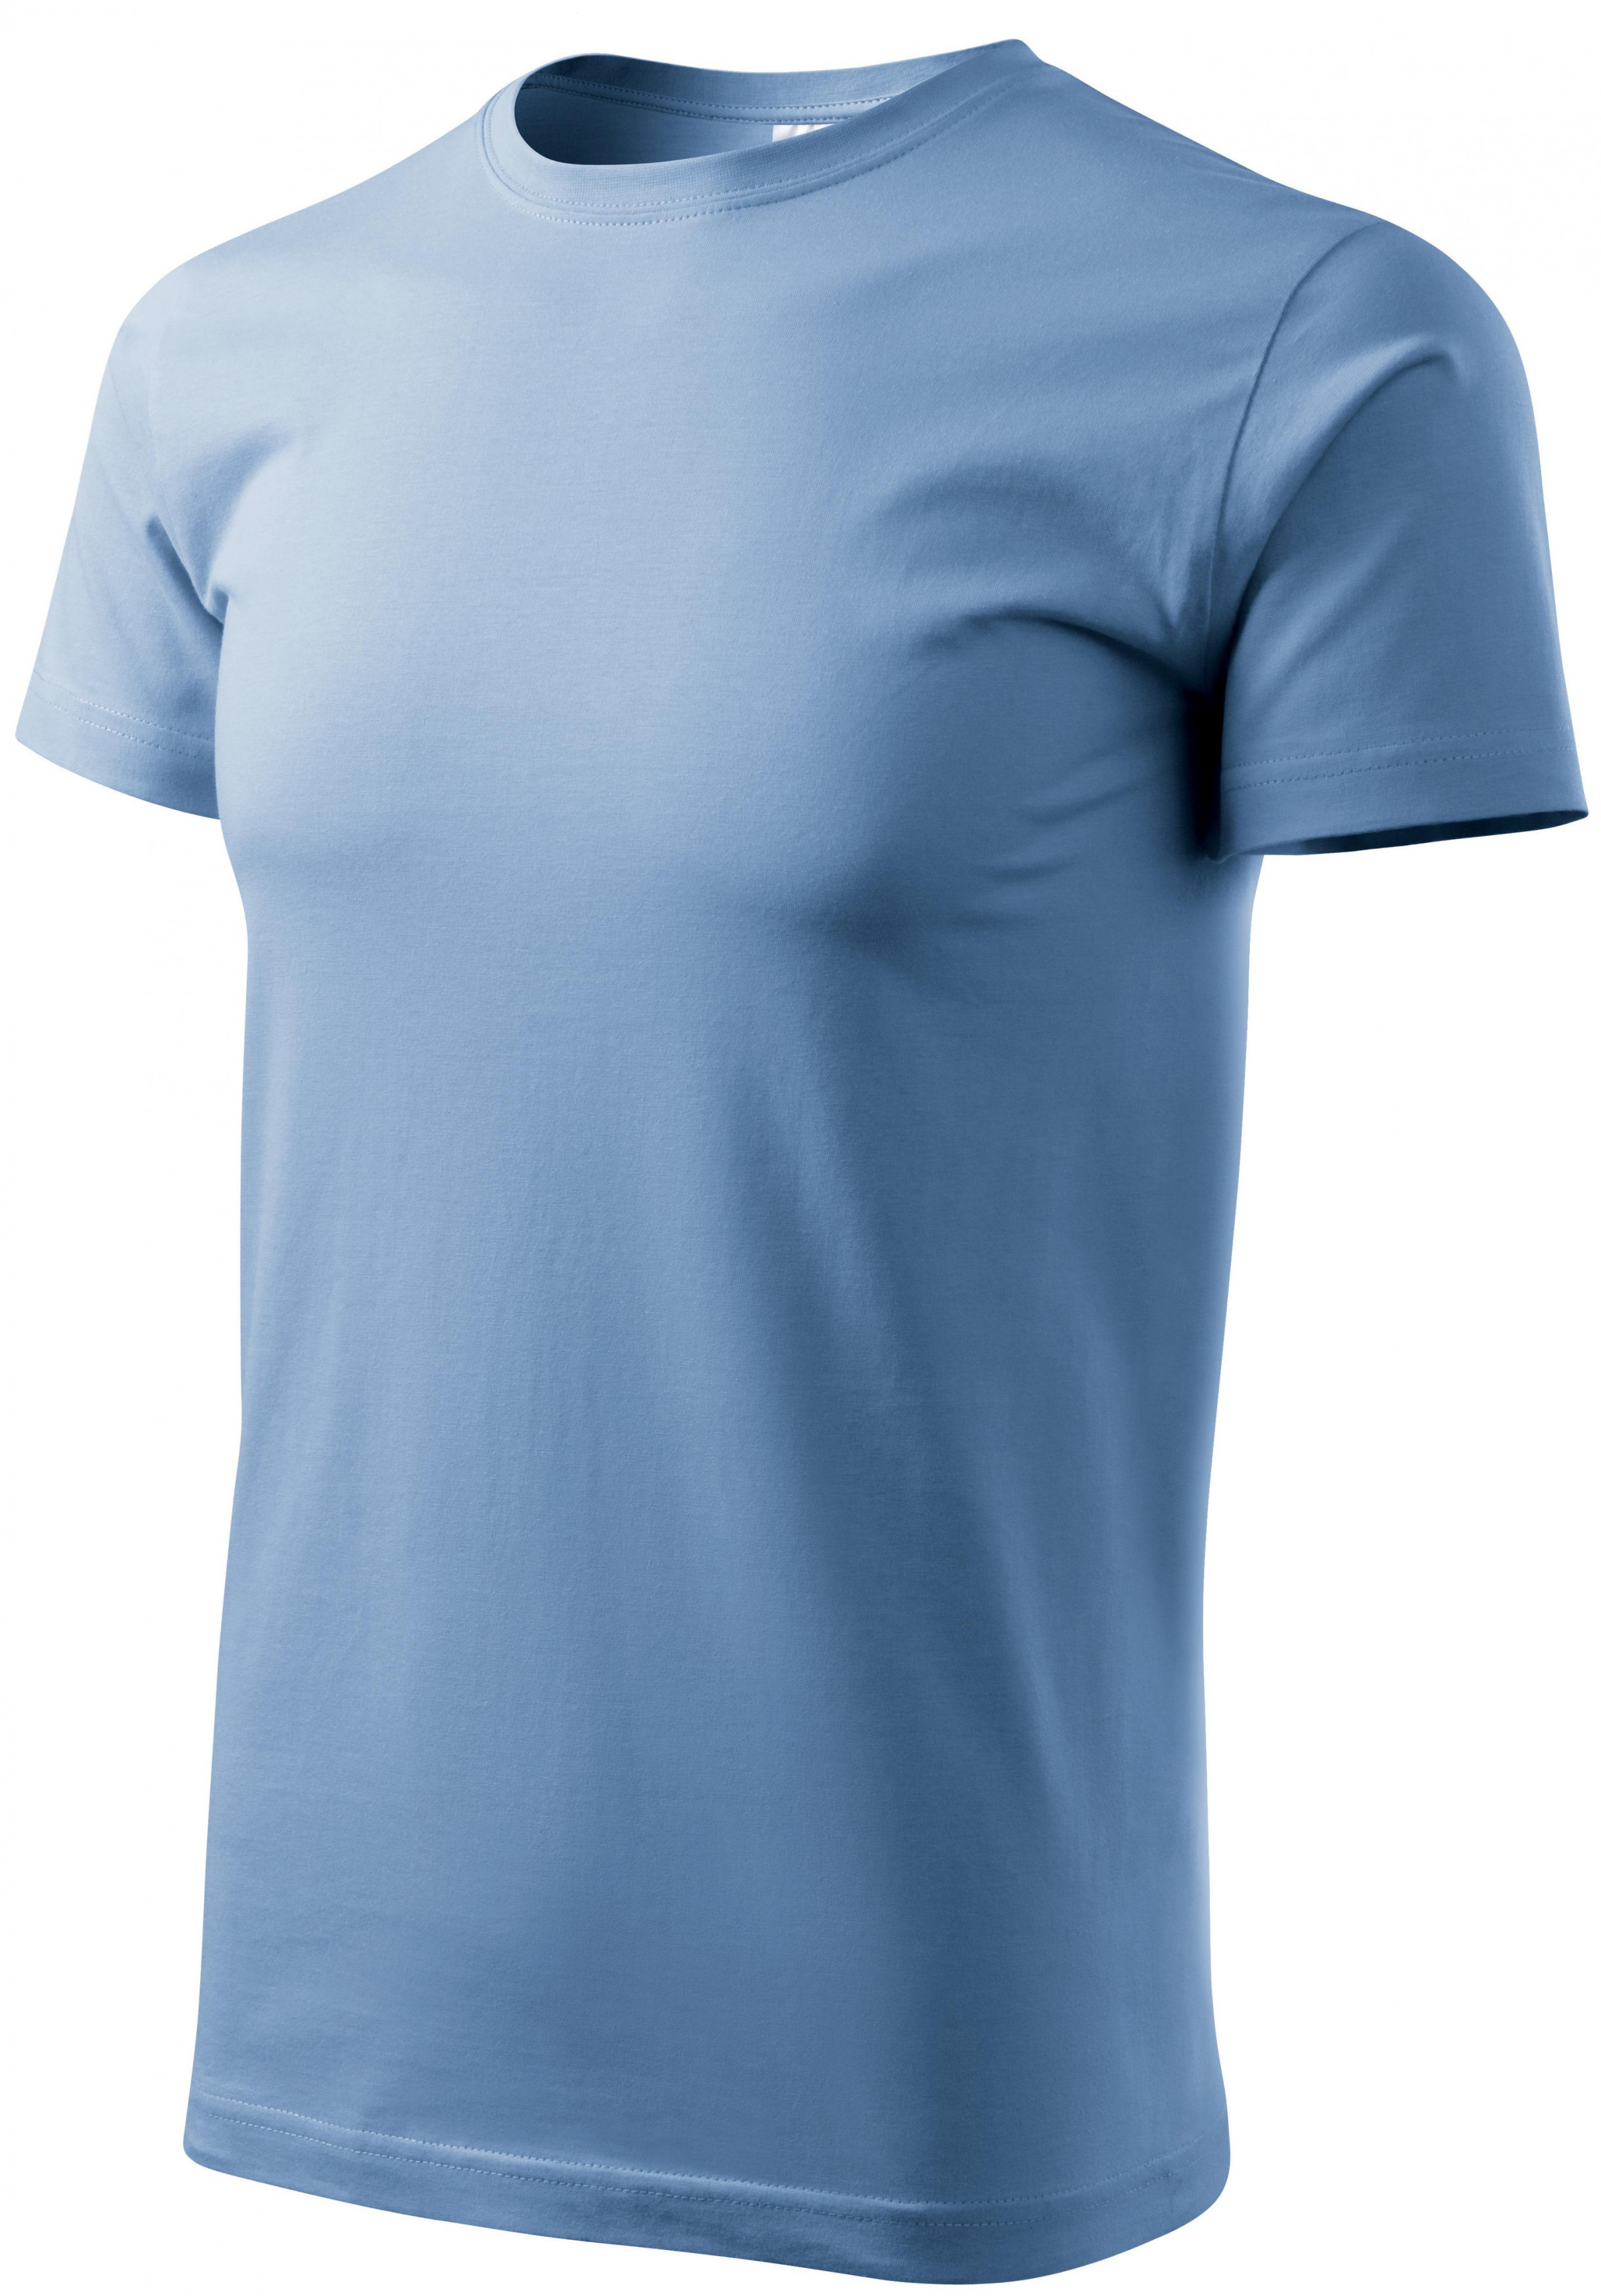 Pánske tričko jednoduché, nebeská modrá, M